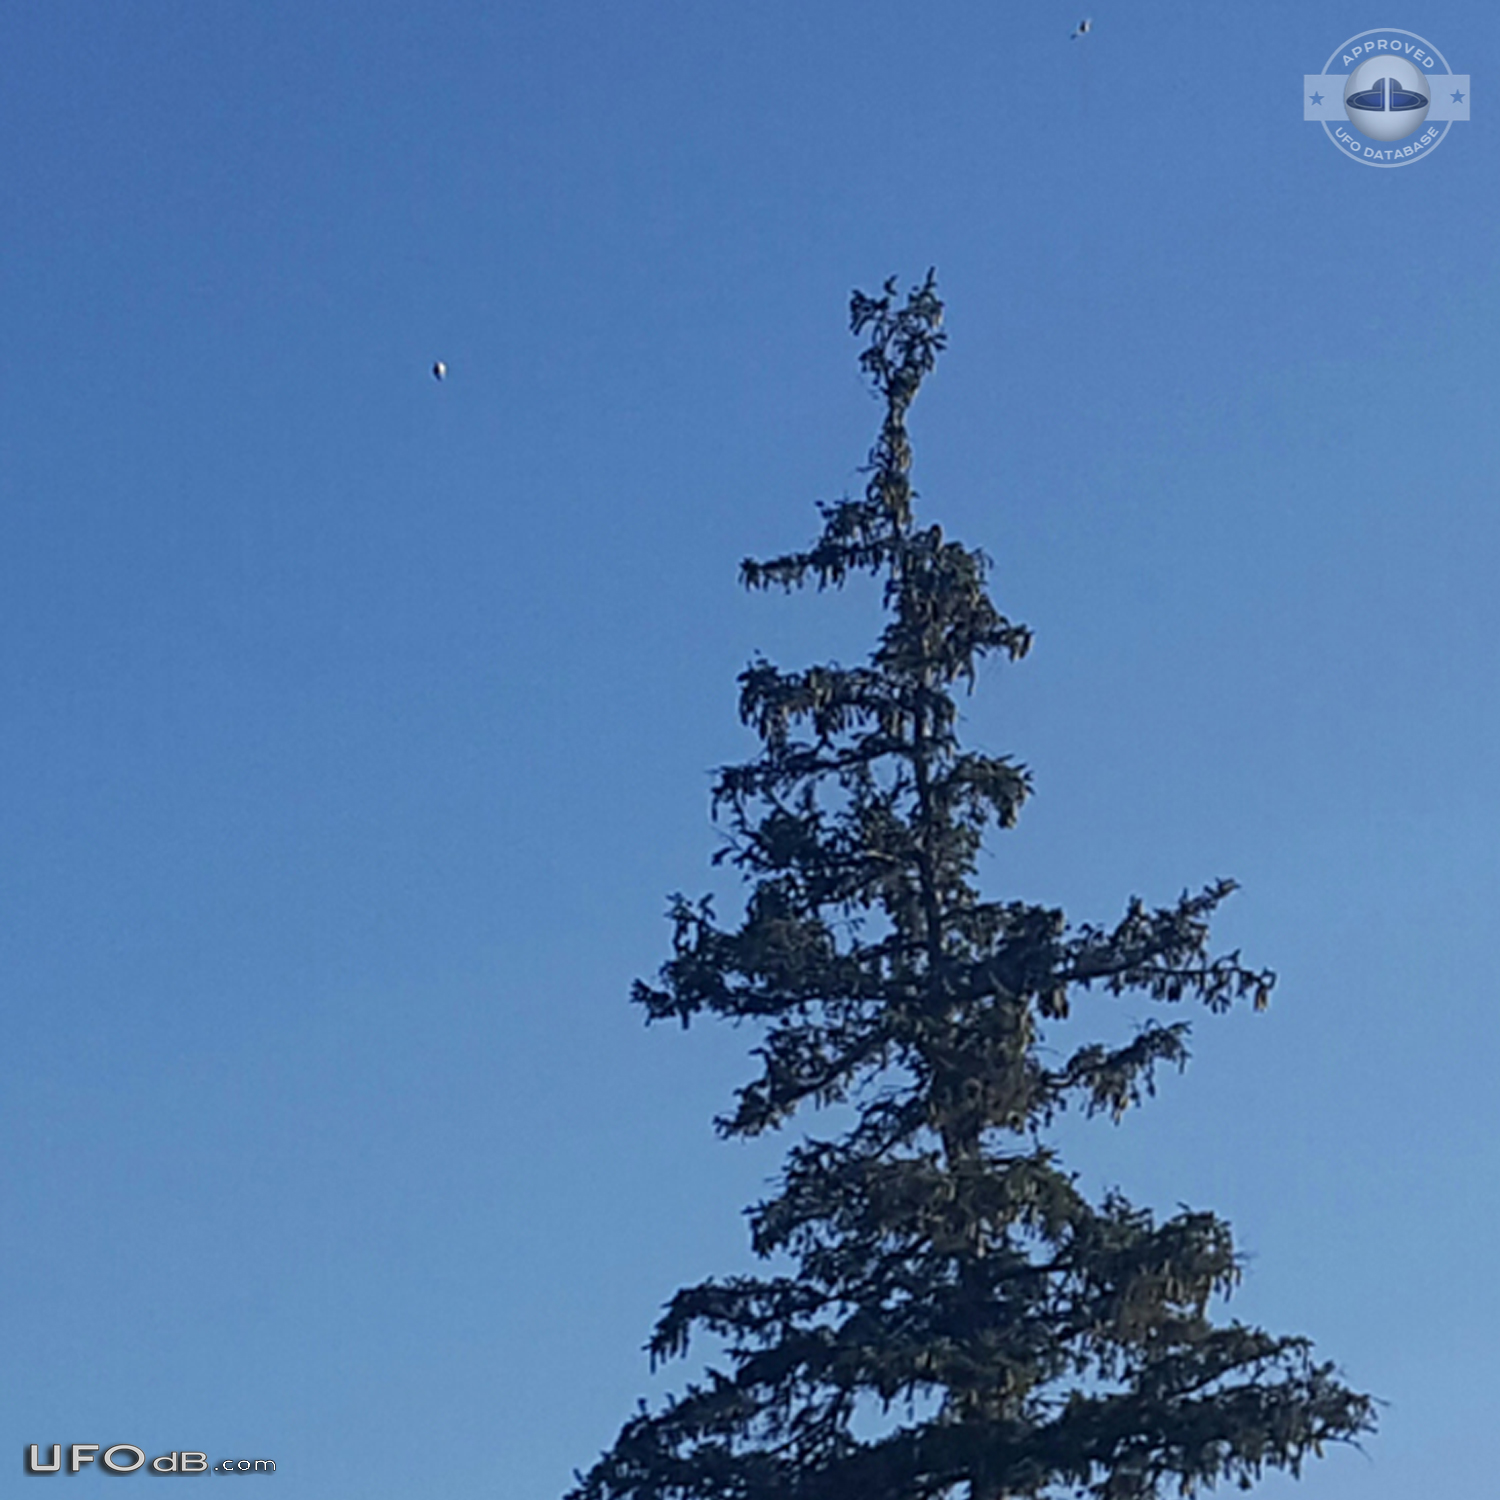 UFO seen near low-flying cropduster